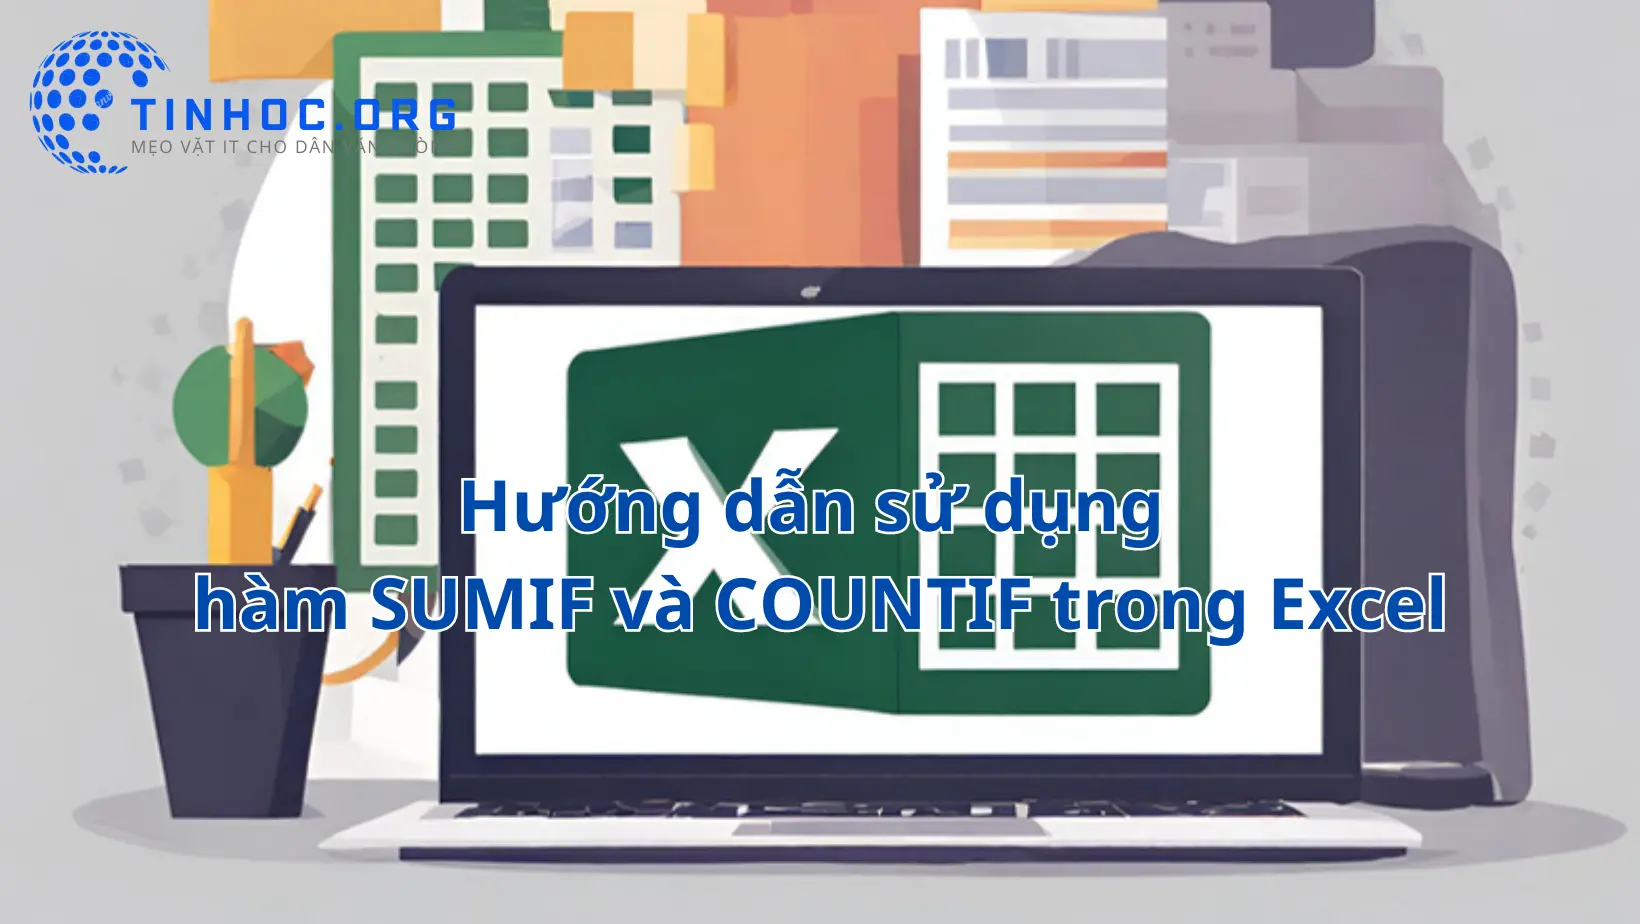 Hàm SUMIF và COUNTIF trong Microsoft Excel là hai hàm quan trọng cho phép bạn thực hiện tính toán dựa trên điều kiện.